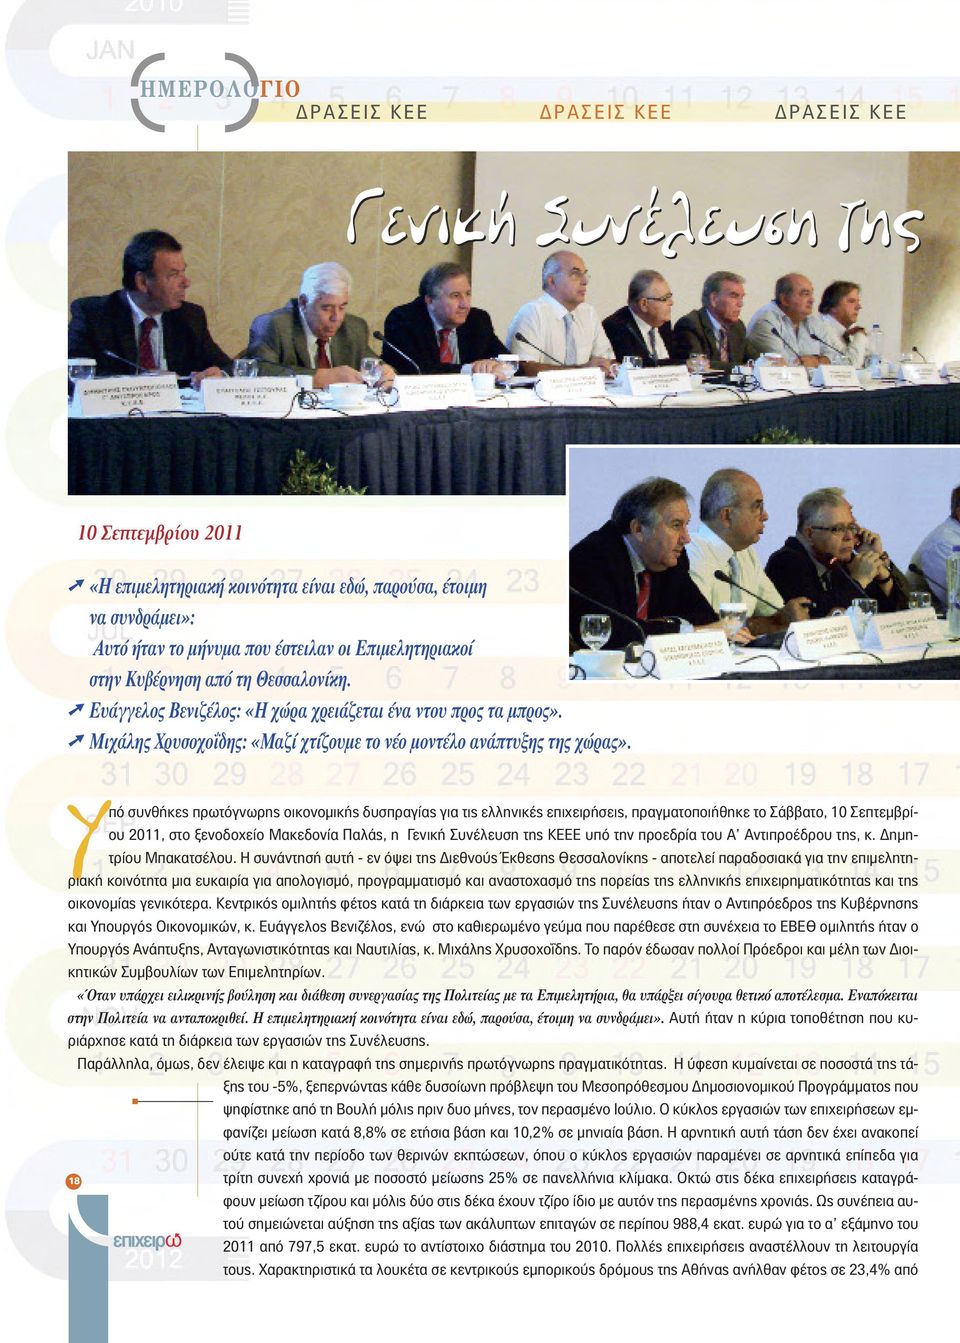 Υπό συνθήκες πρωτόγνωρης οικονομικής δυσπραγίας για τις ελληνικές επιχειρήσεις, πραγματοποιήθηκε το Σάββατο, 10 Σεπτεμβρίου 2011, στο ξενοδοχείο Μακεδονία Παλάς, η Γενική Συνέλευση της ΚΕΕΕ υπό την